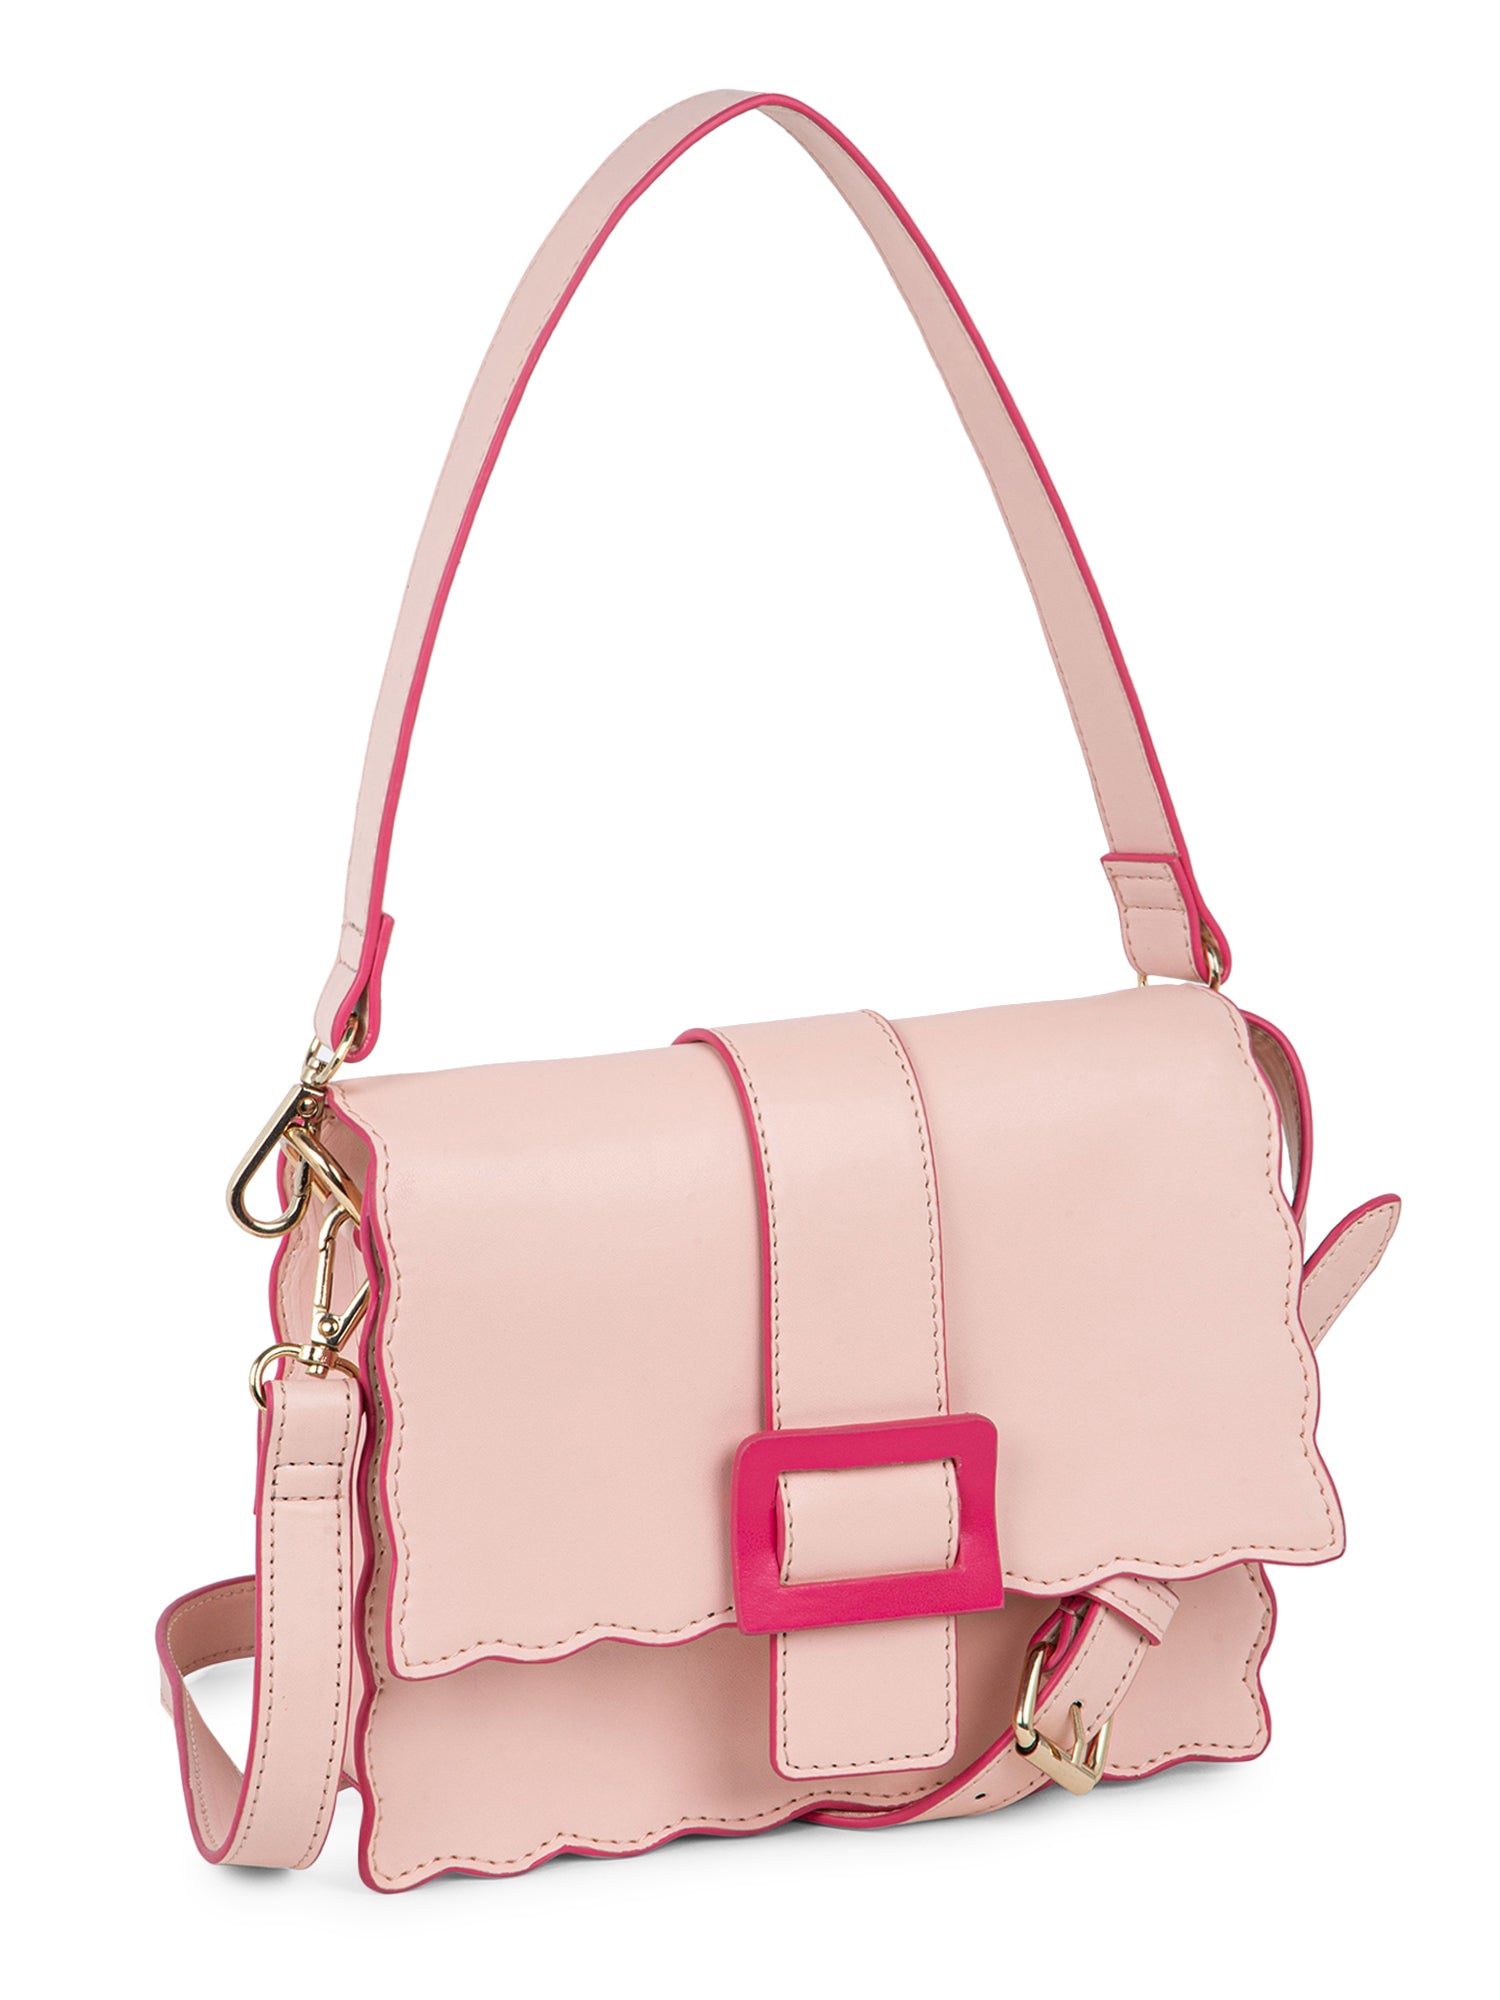 Women's Wide Shoulder Bag Strap, Adjustable Replacement Leather Long Shoulder  Strap(pink) (d-583-a)